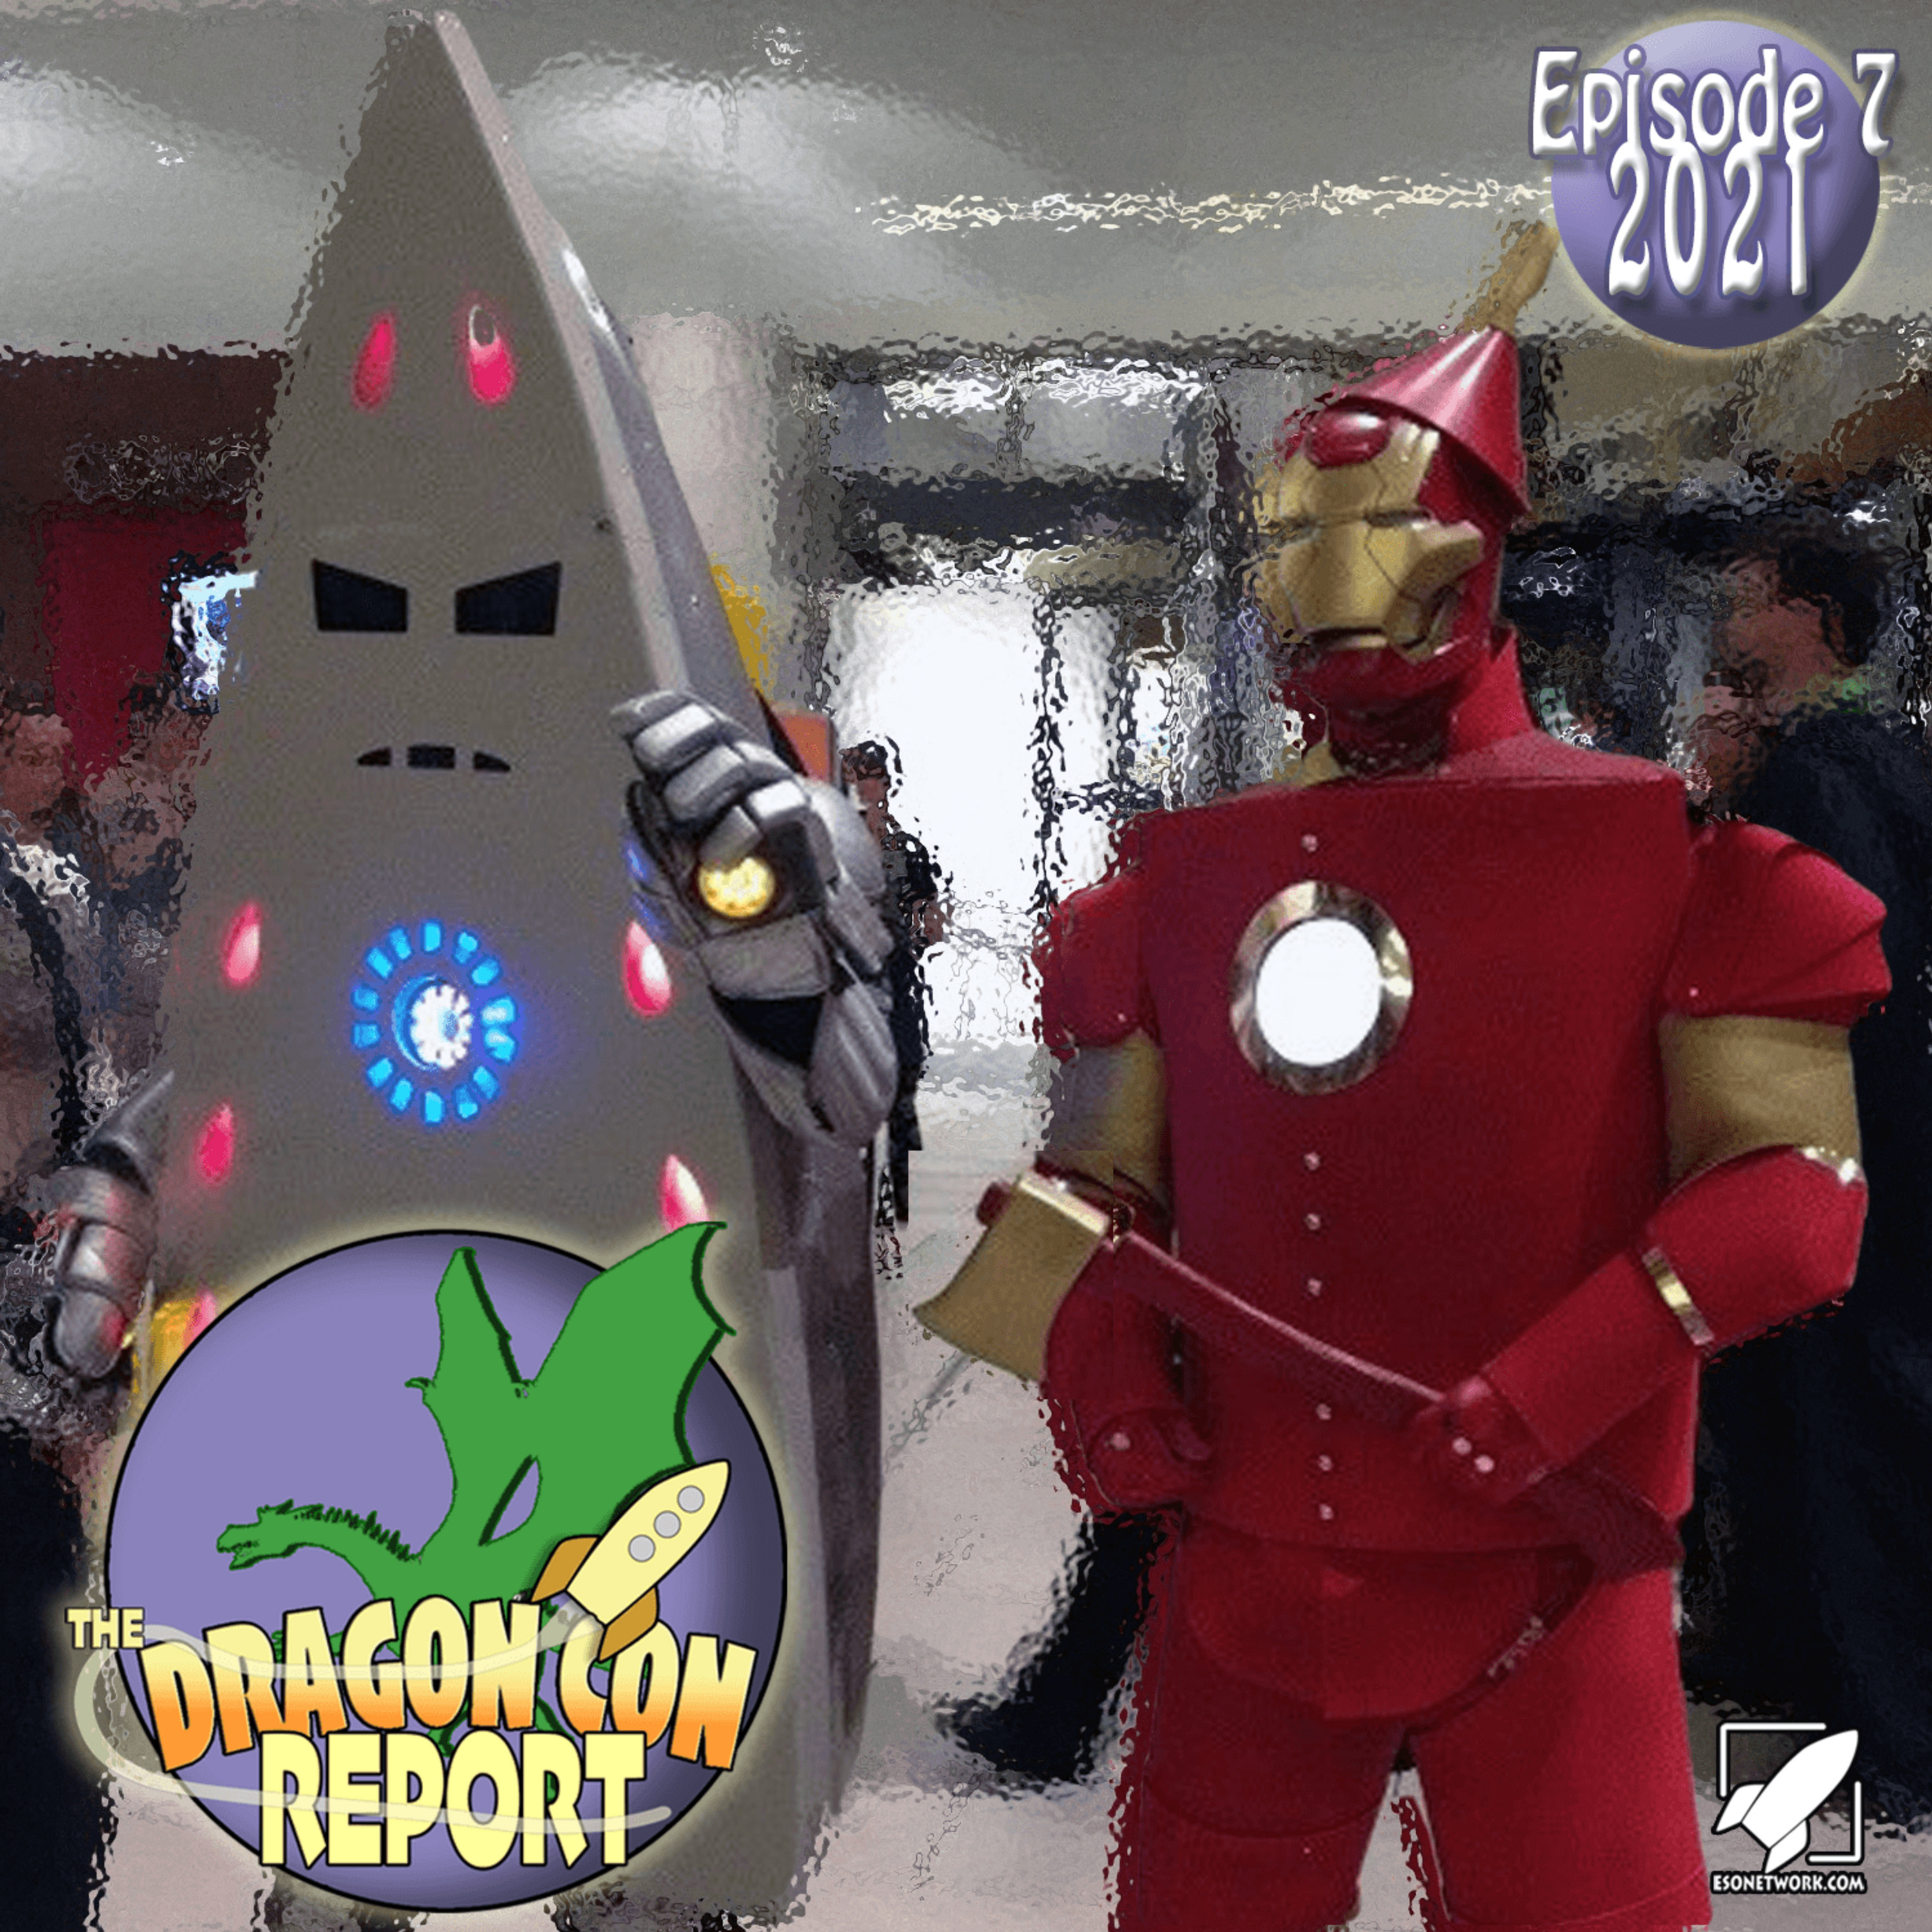 The 2021 Dragon Con Report Episode 7